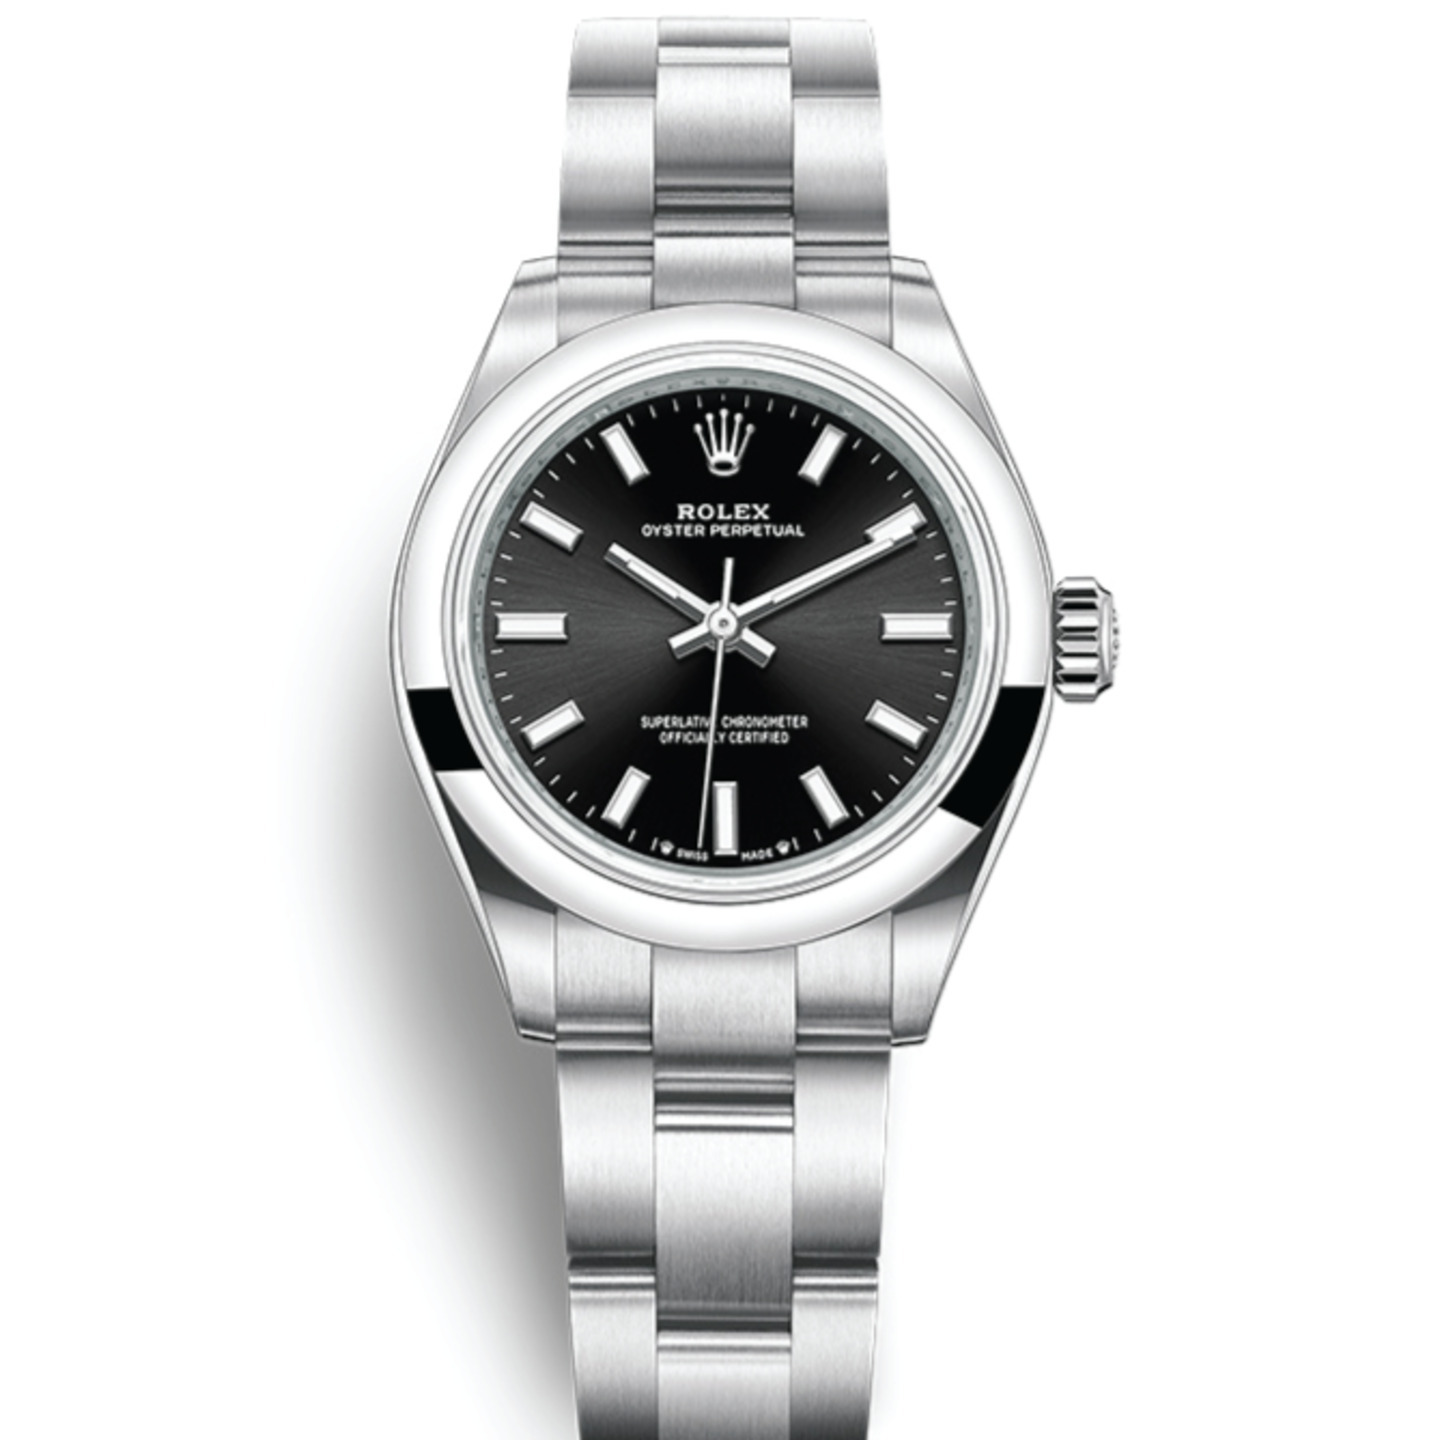 Rolex Oyster Perpetual 28mm 亮黑色錶面蠔式錶帶腕錶